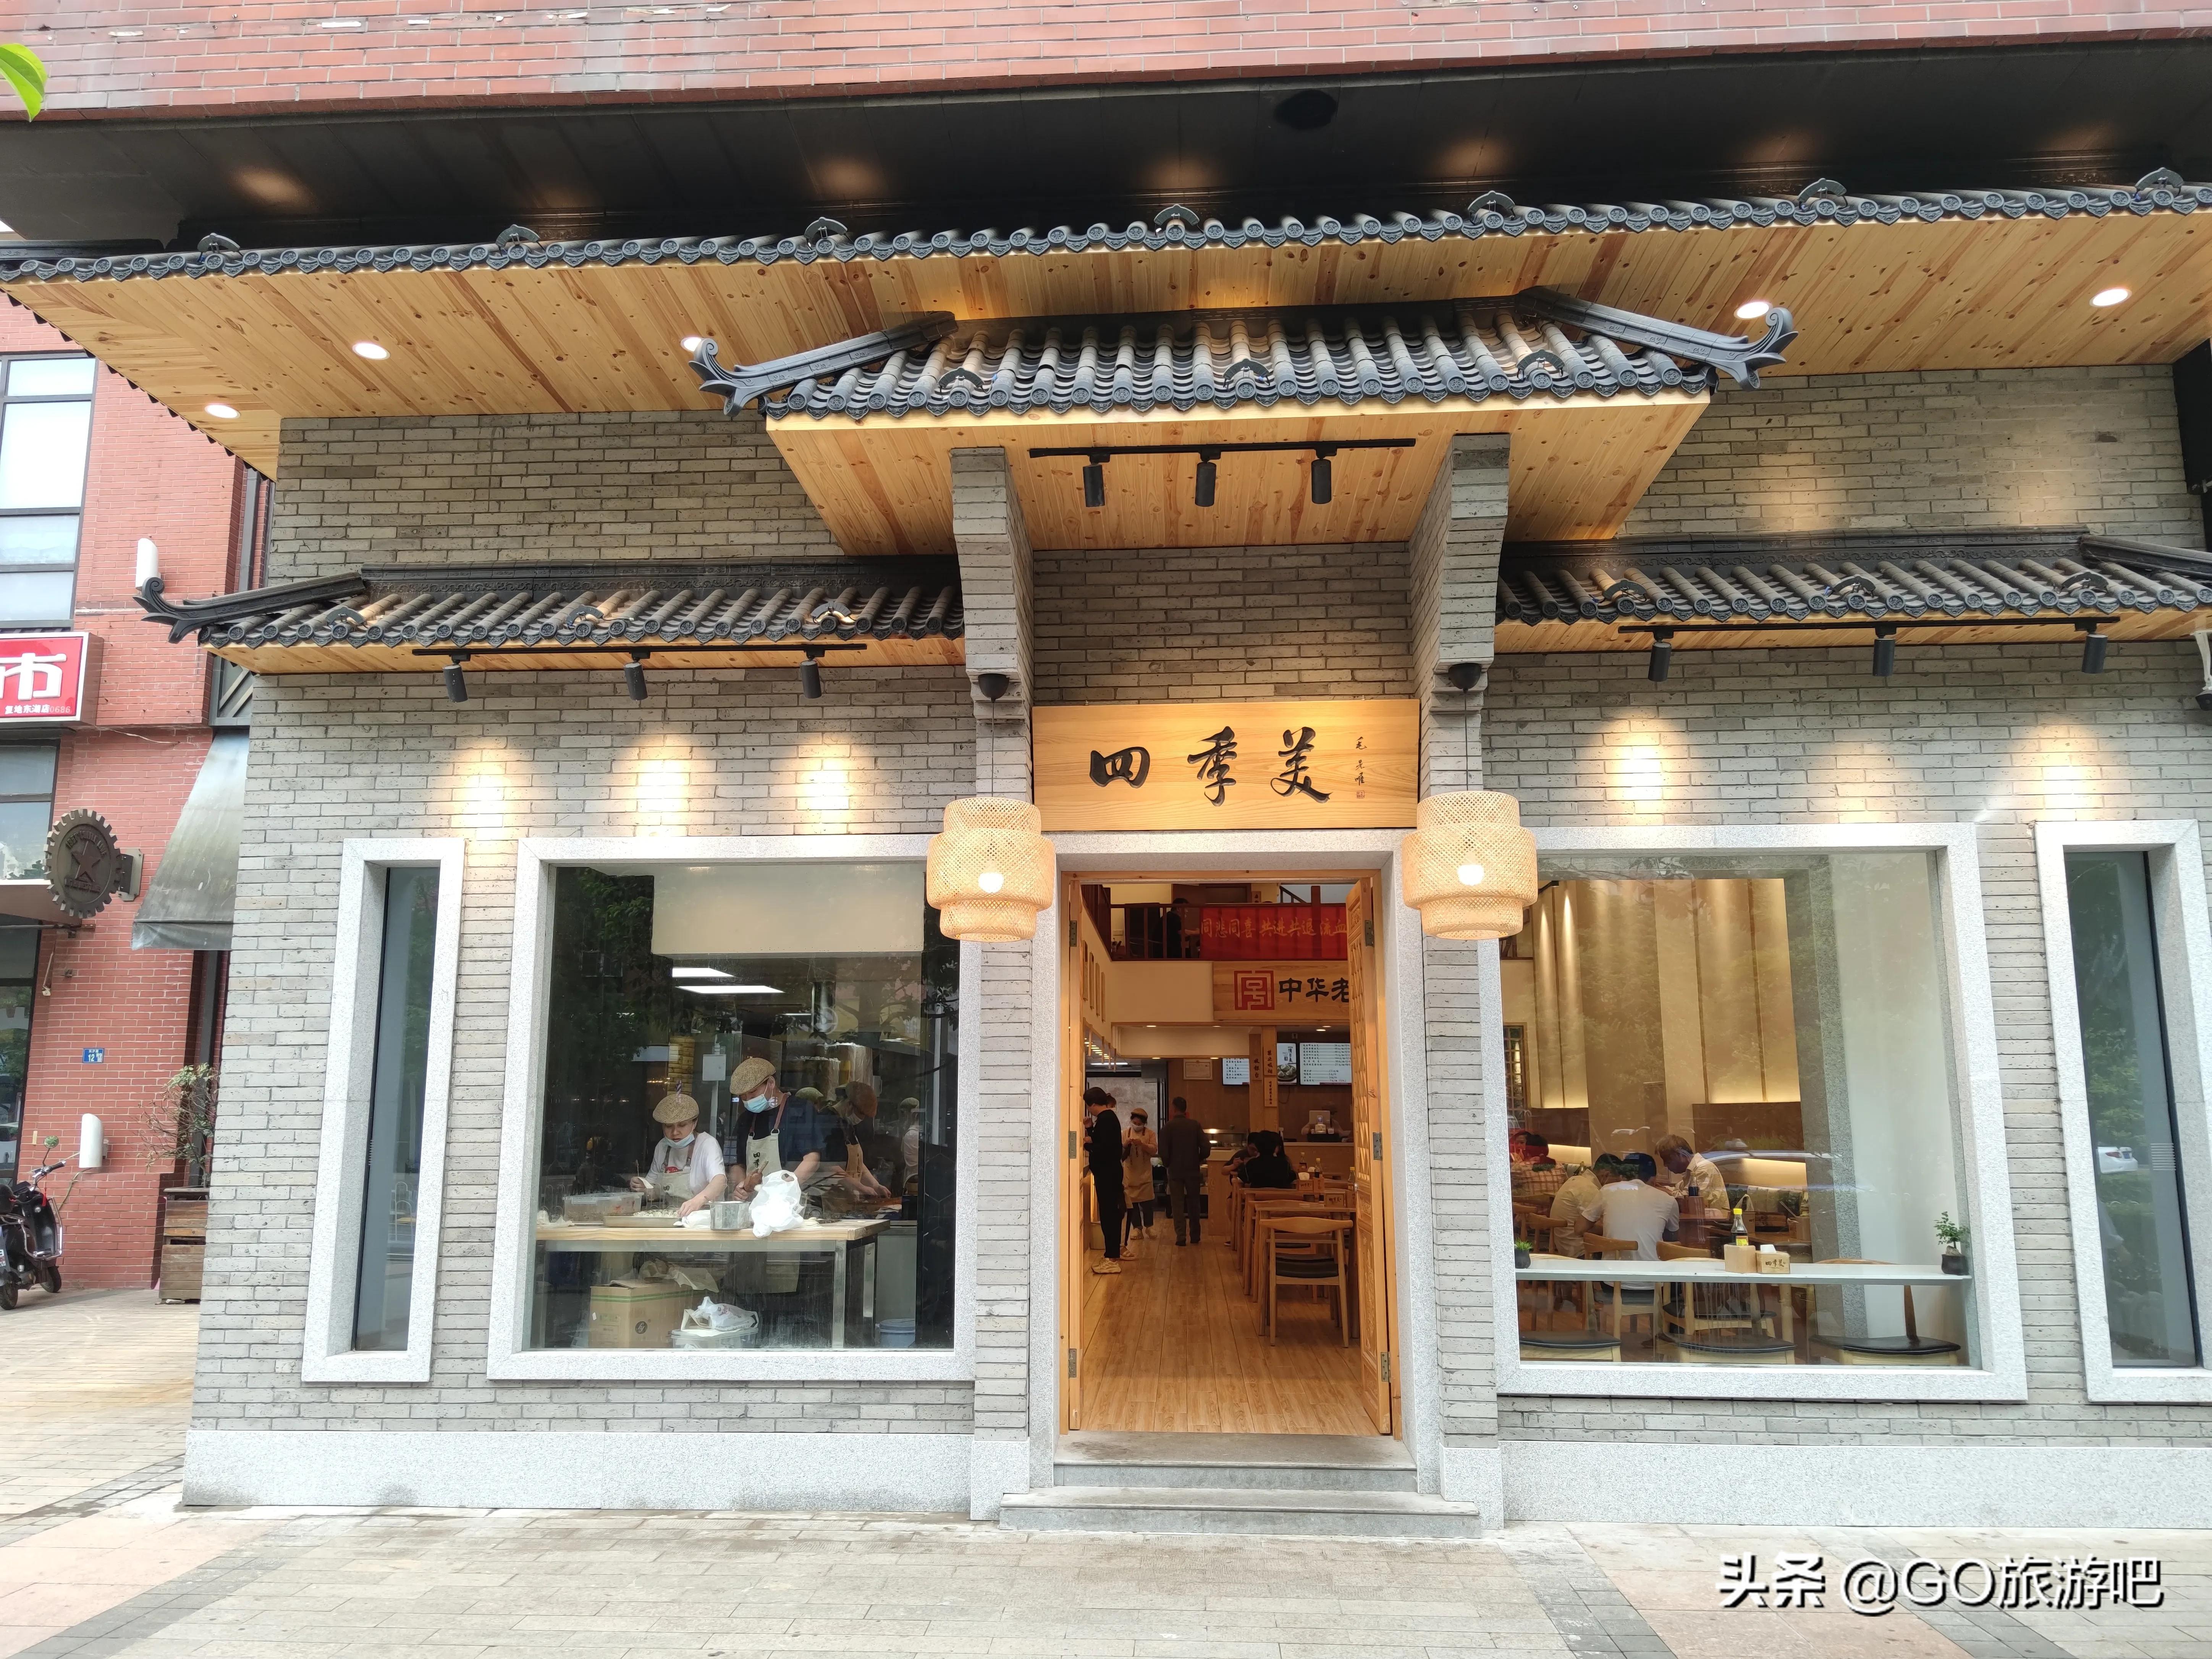 来武汉旅游一定要体验一次武汉的早餐文化——“过早”